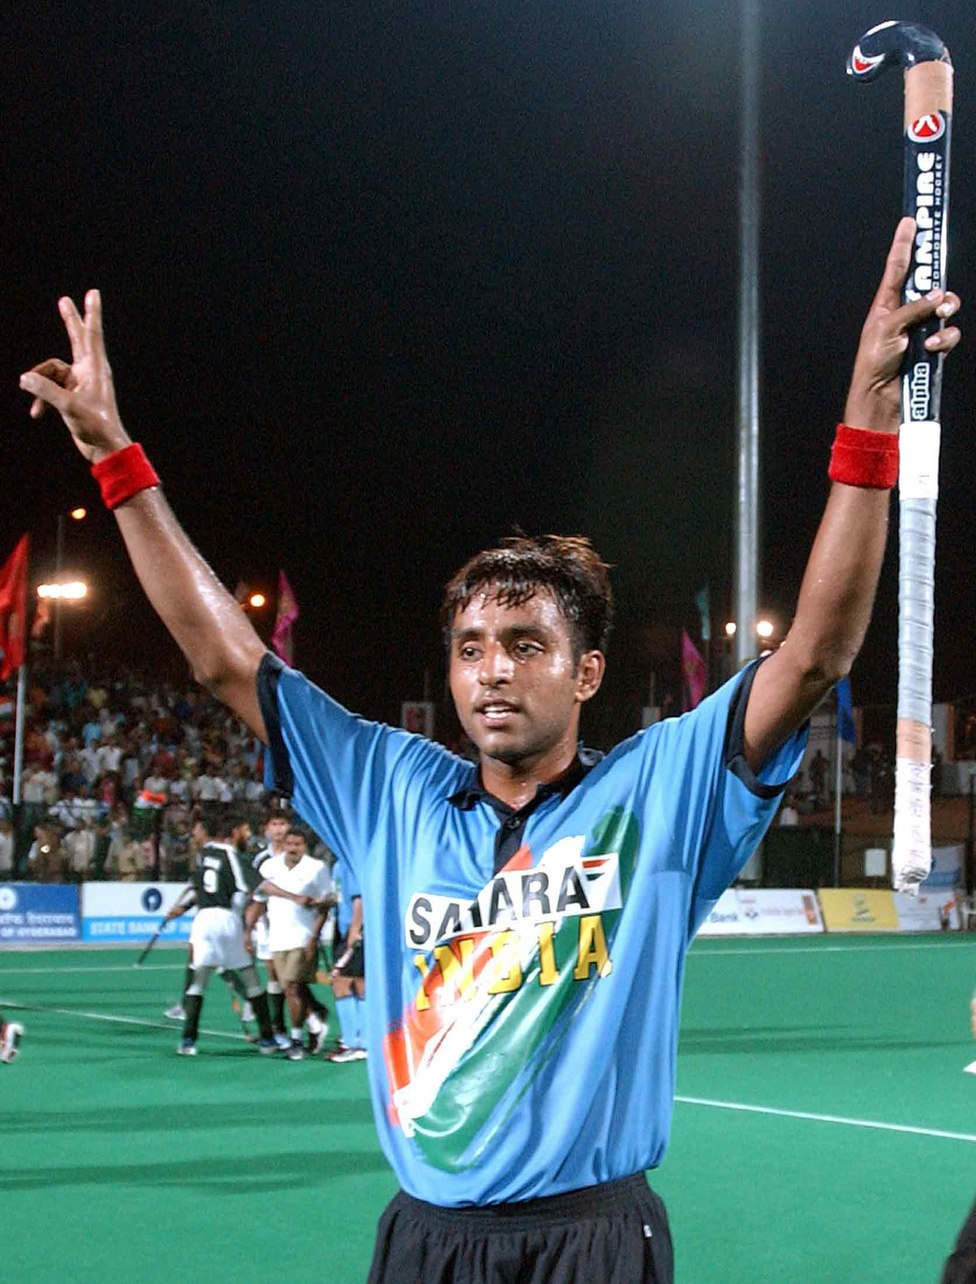 Gagan Ajit Singh Raise His Hands Up